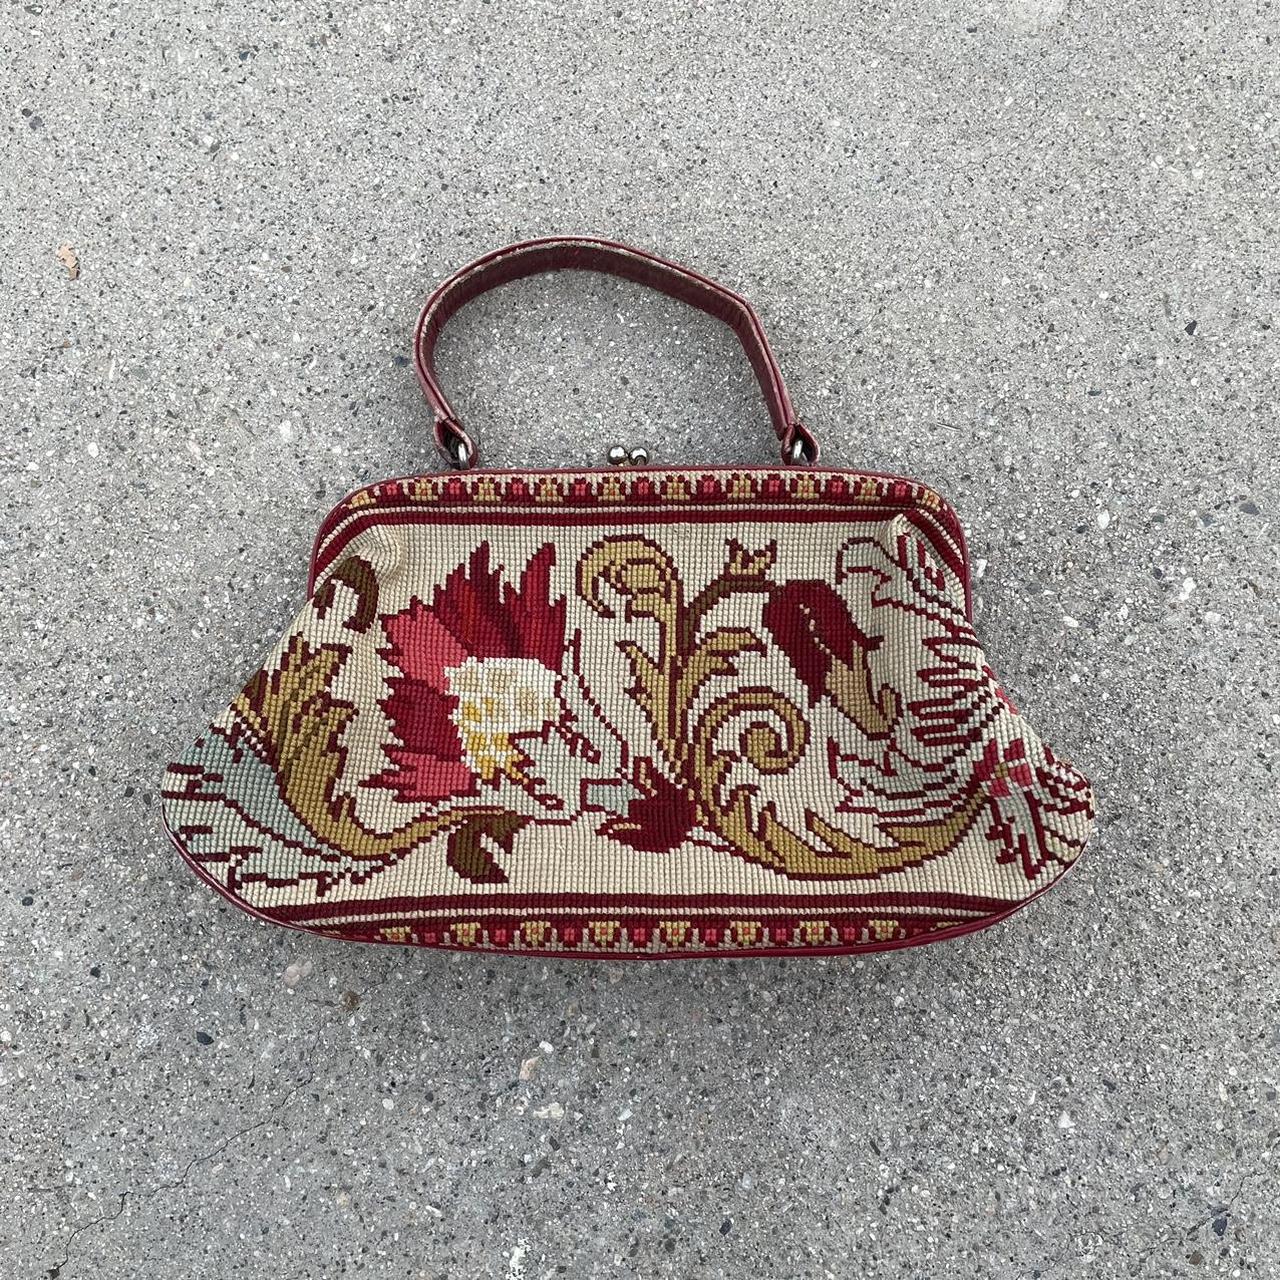 Vintage Saks fifth Avenue purse !